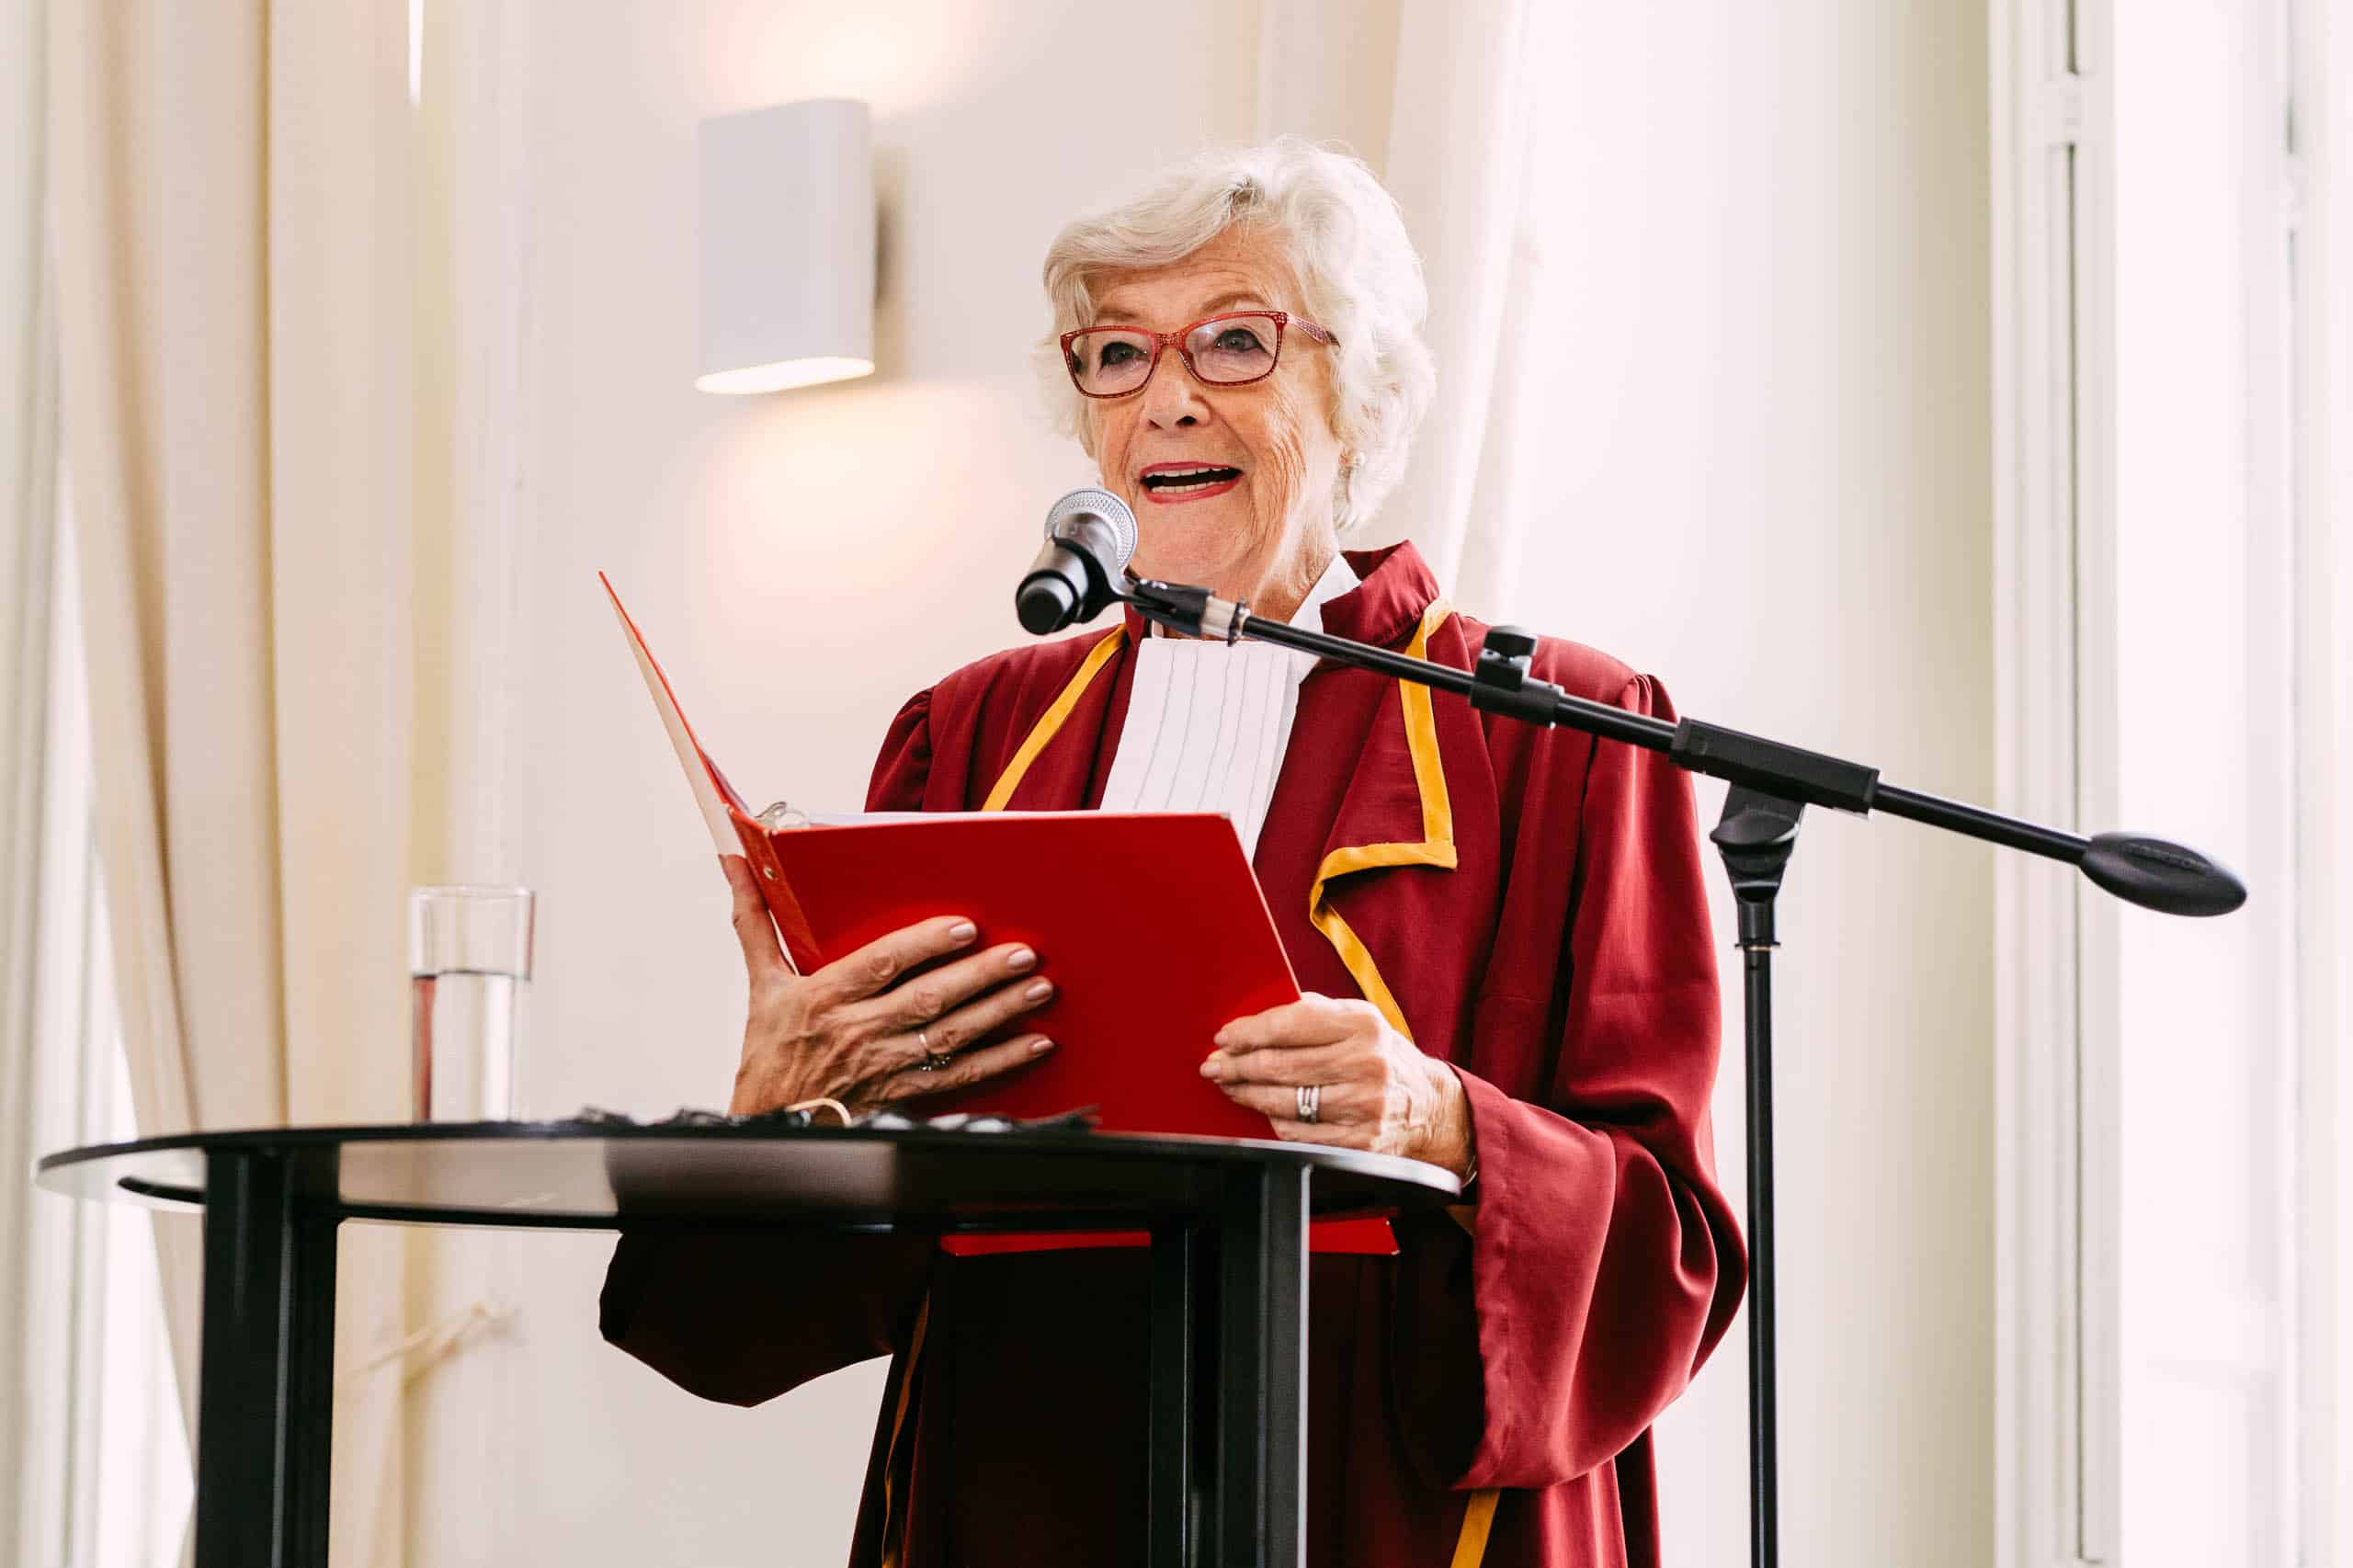 Een oudere vrouw in een rood gewaad staat op een podium tijdens een ondertrouwceremonie.